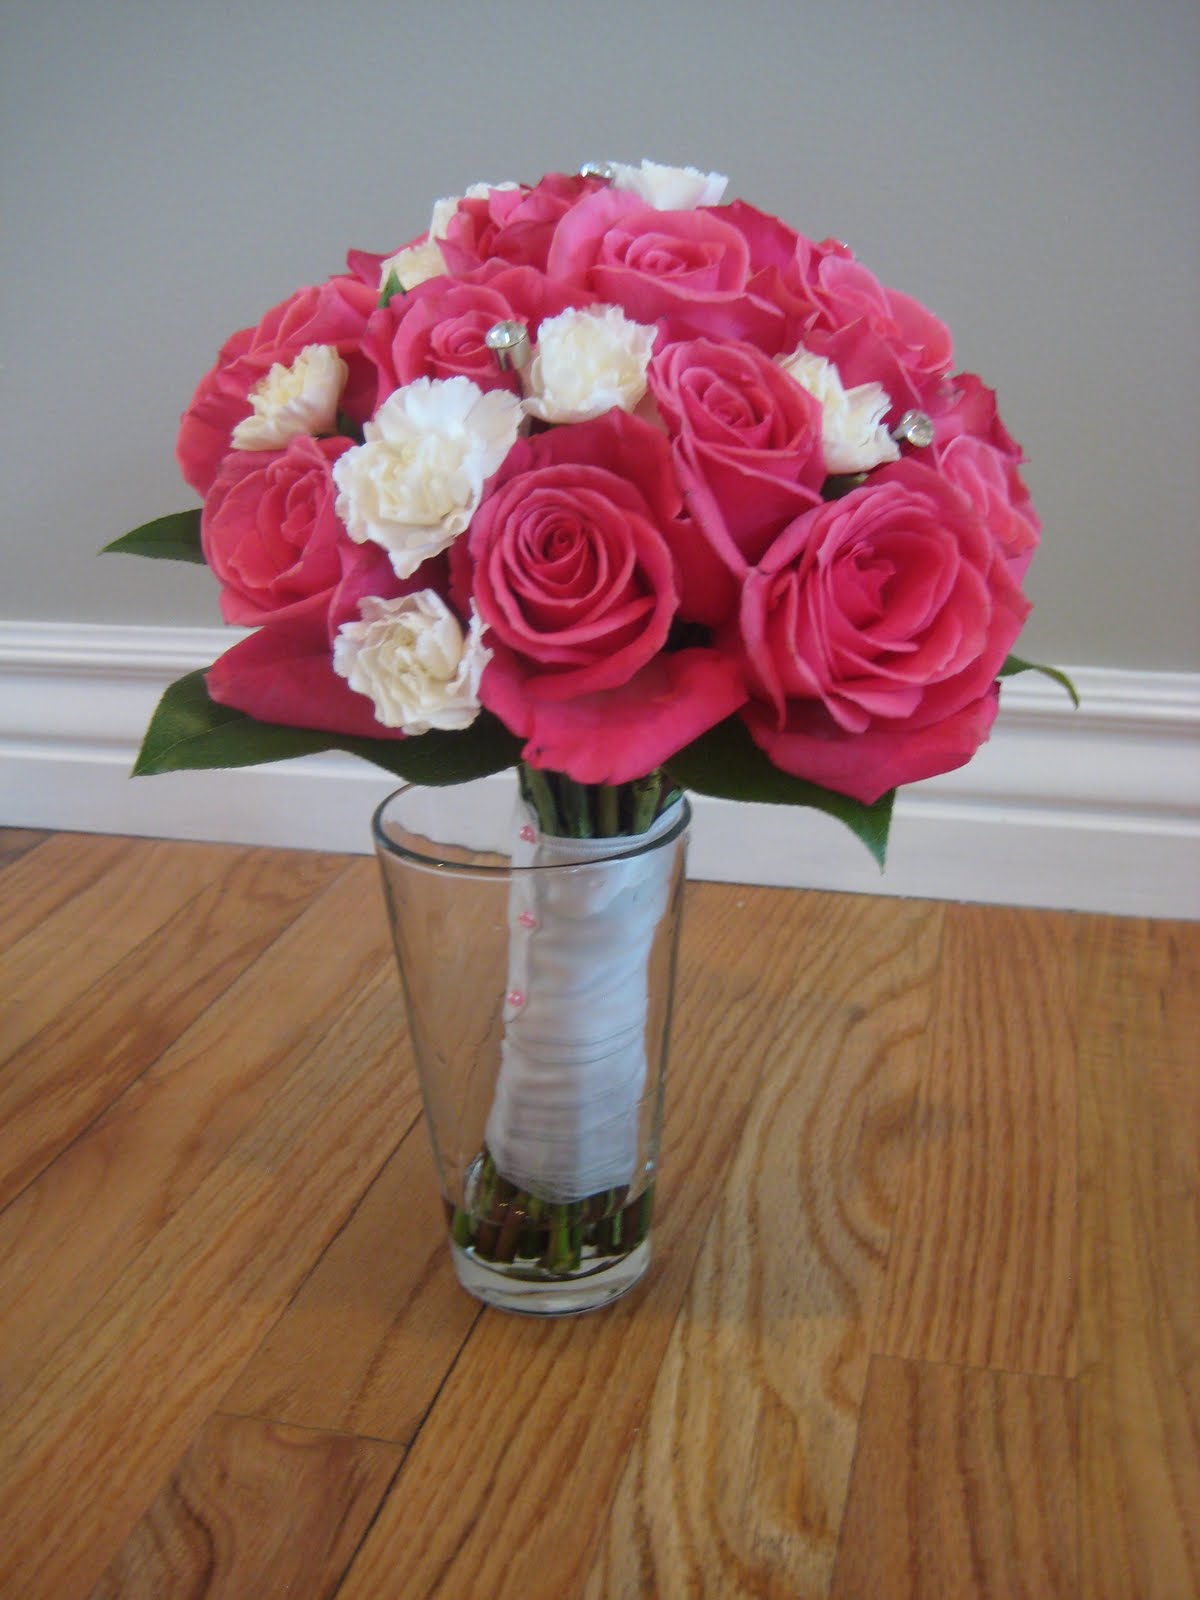 Buds Floral Design: Carnation and Rose Wedding